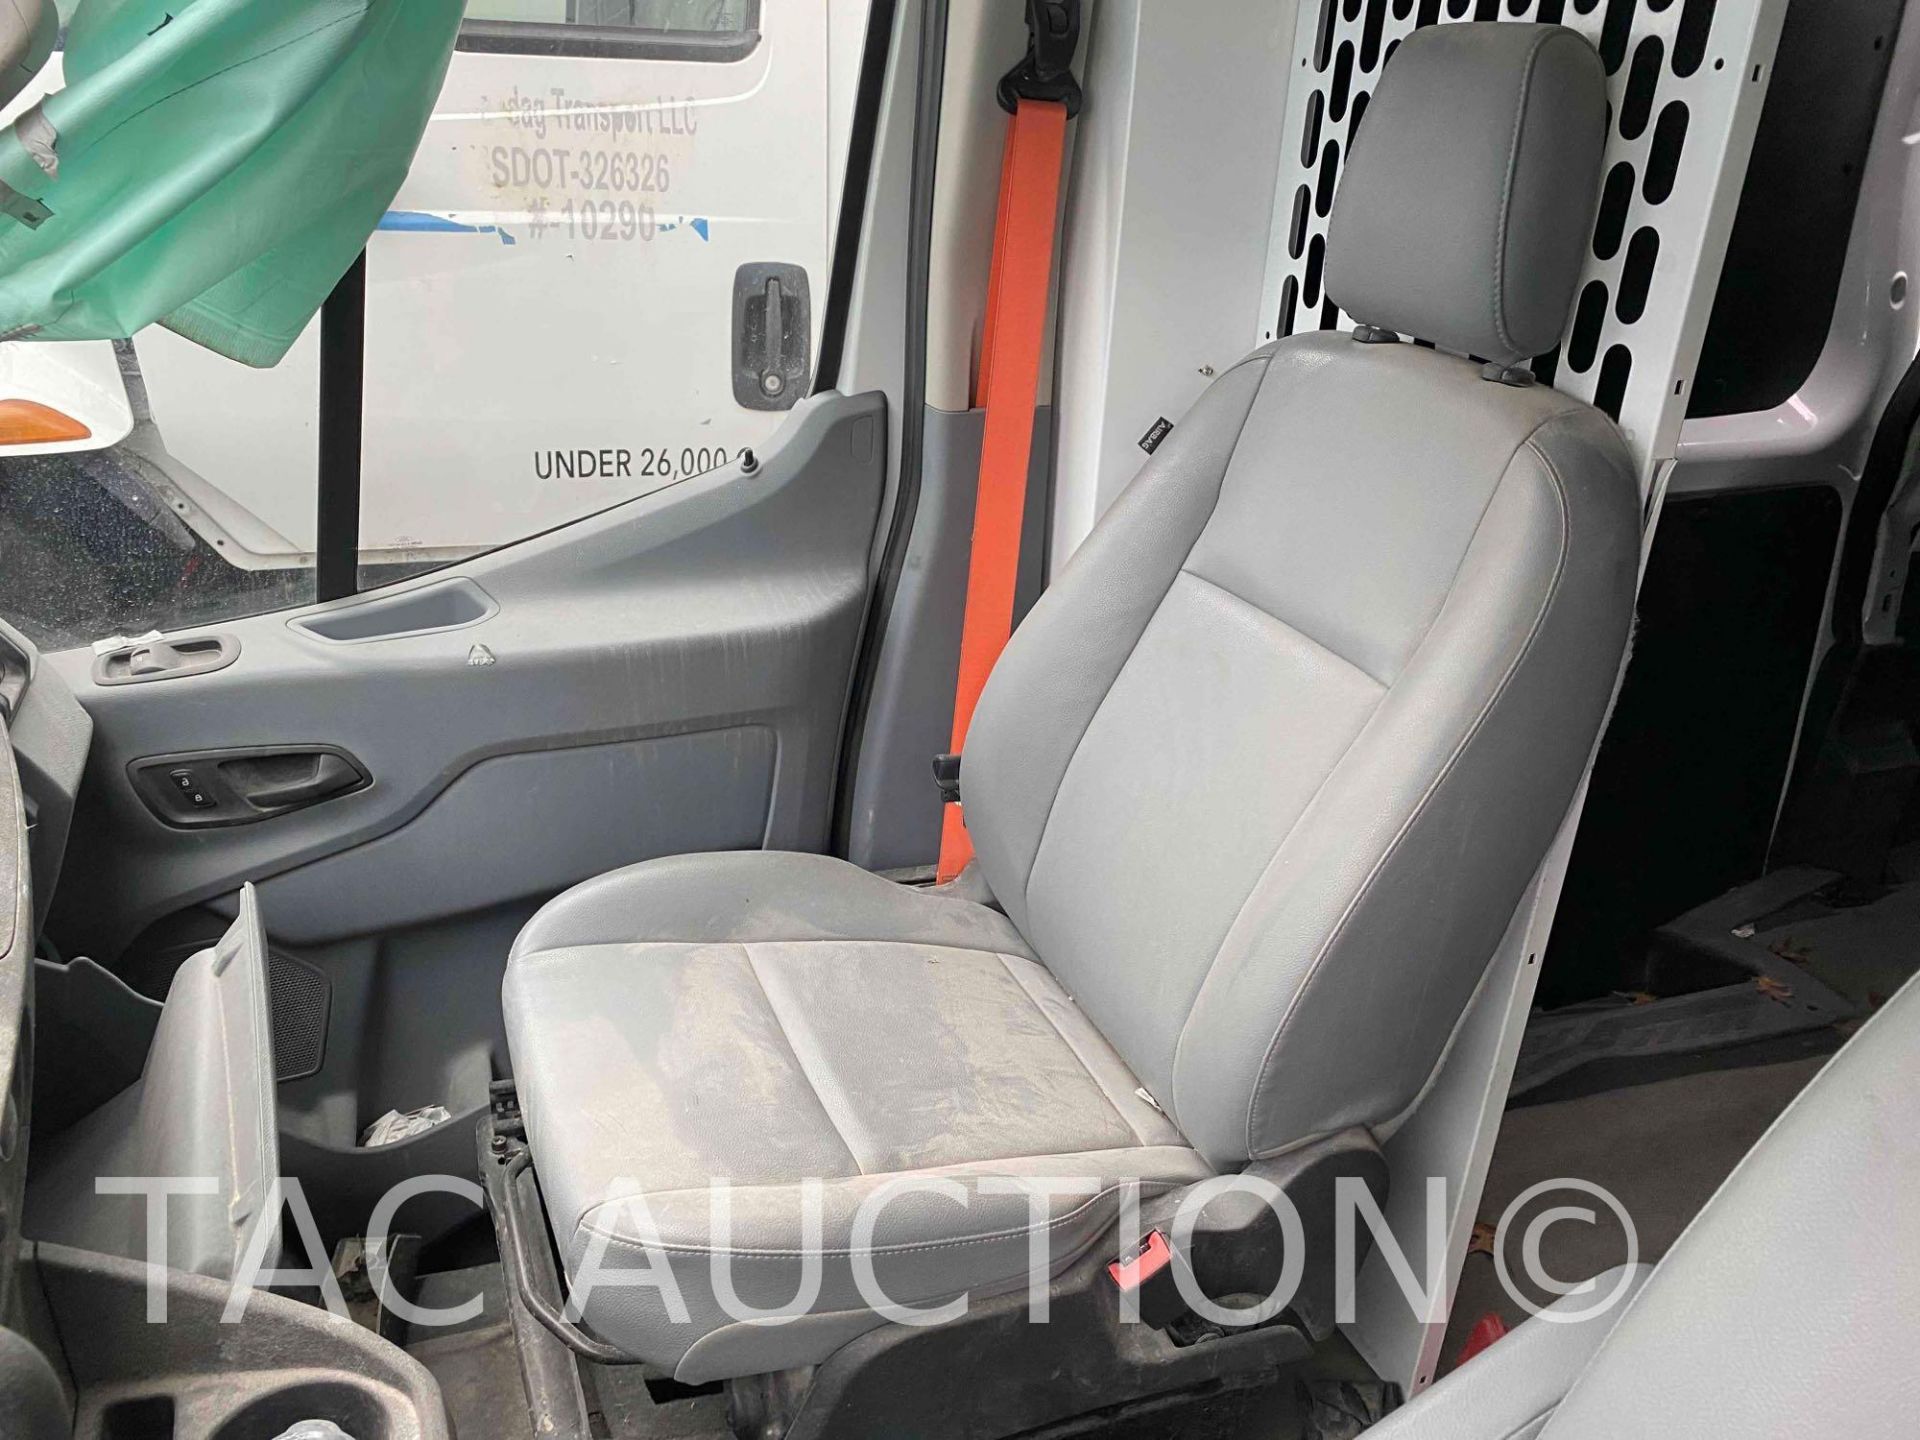 2019 Ford Transit 150 Cargo Van - Image 15 of 36